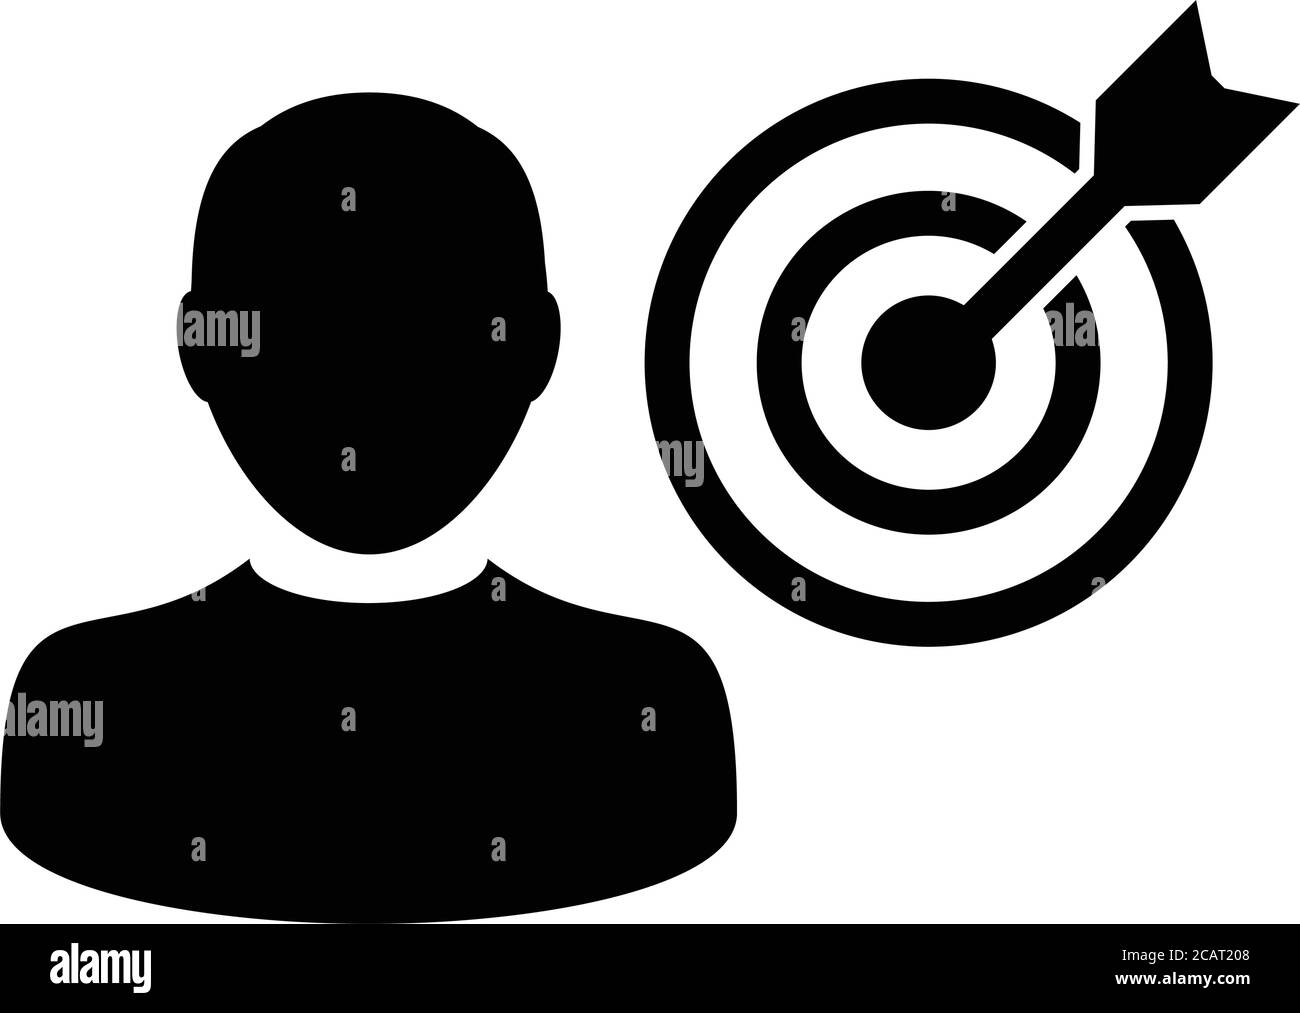 Man Icon Vektor Ziel Bullseye Dartboard mit Benutzer Person Avatar Symbol für Business Development Ziele in Glyph Piktogramm Illustration Stock Vektor